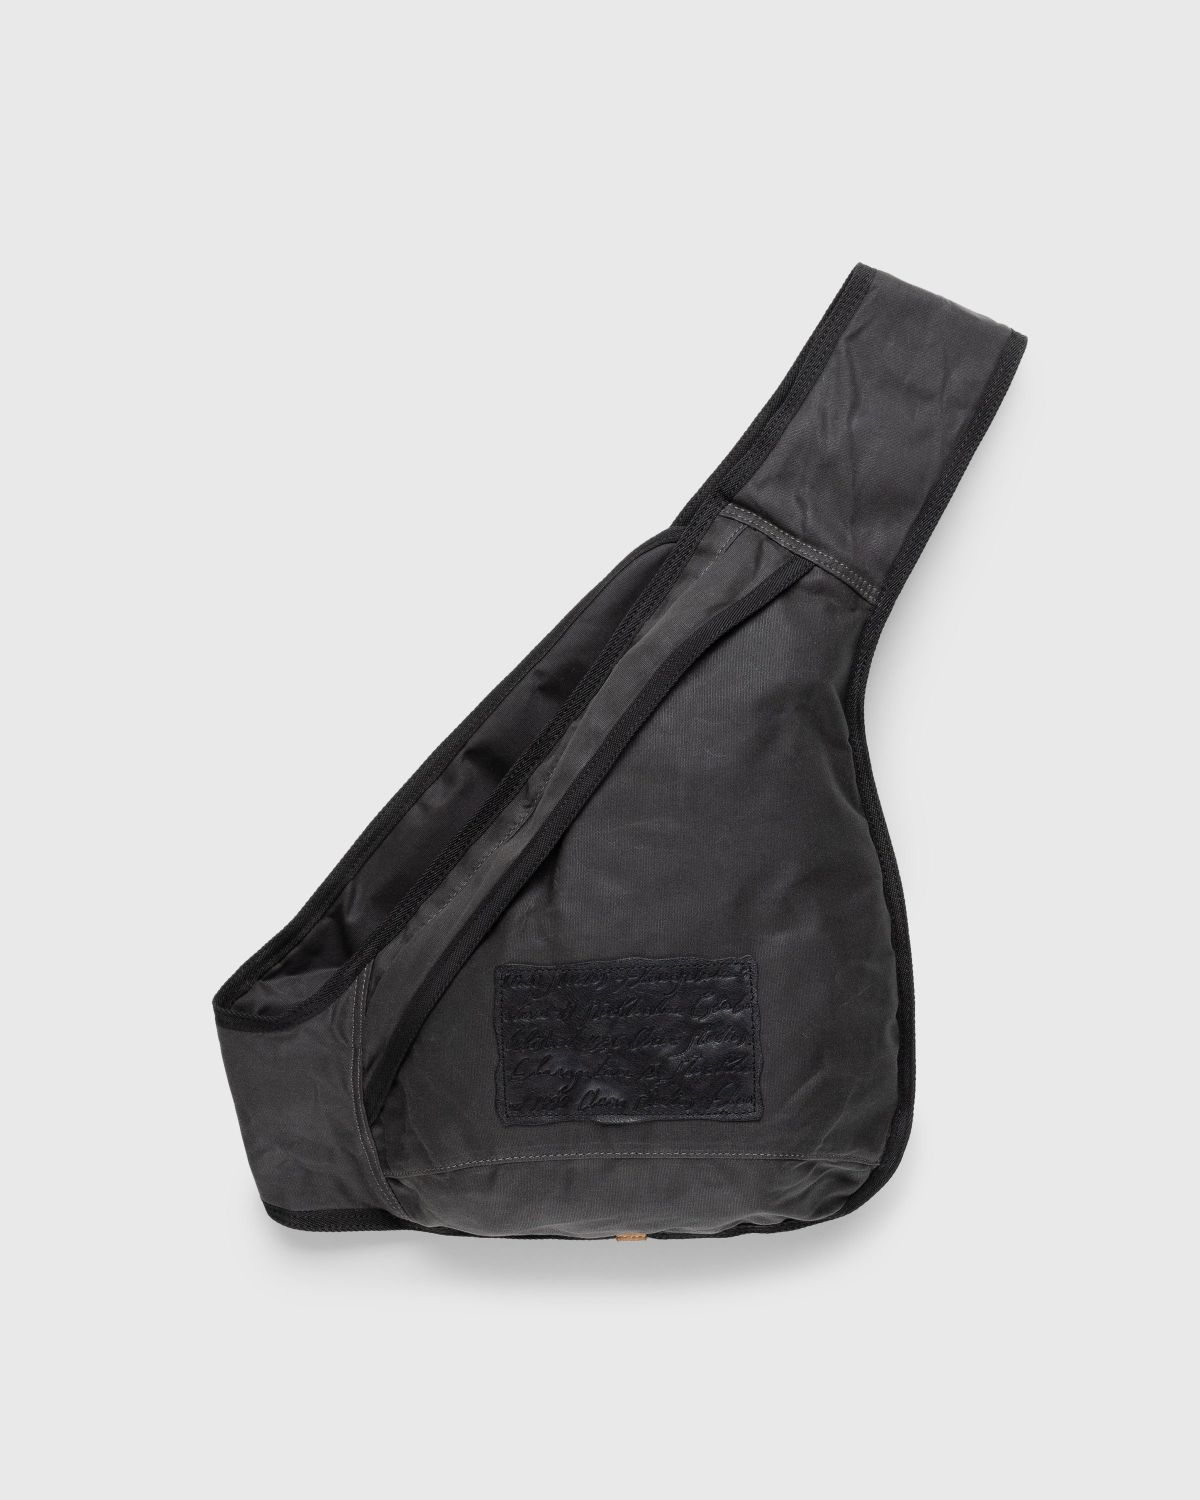 Acne Studios – Sling Backpack Grey/Black - Bags - Multi - Image 1